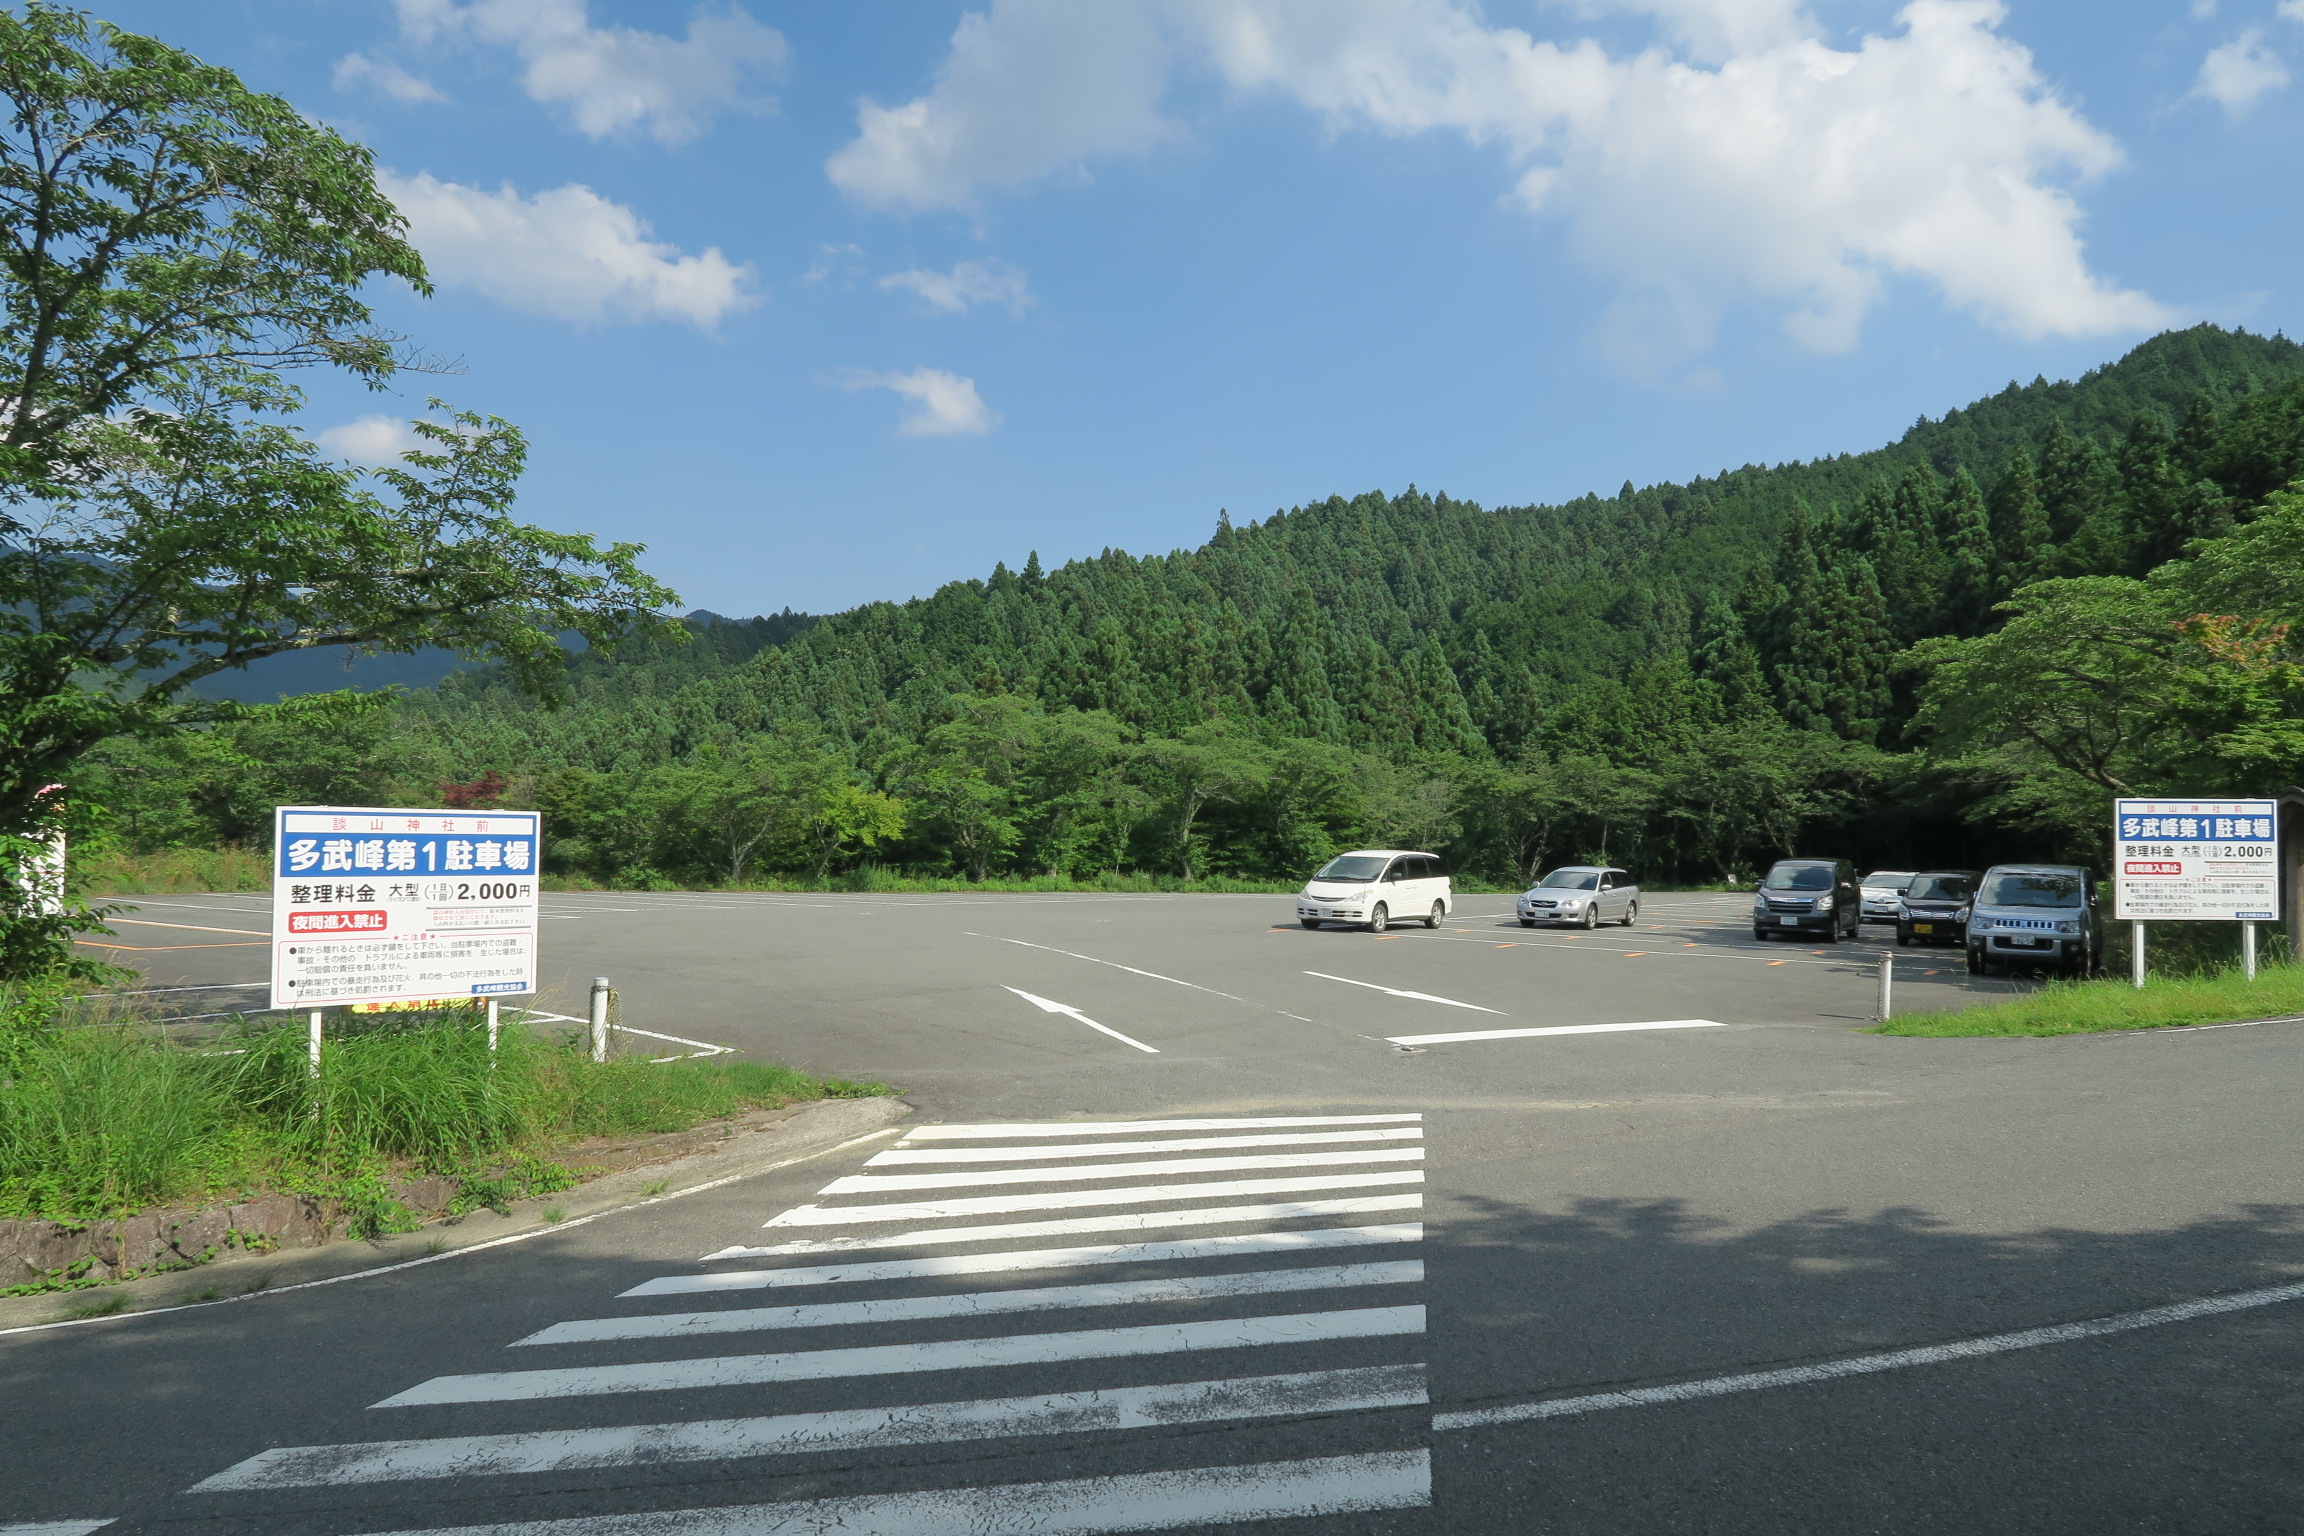 談山神社に近い無料駐車場。